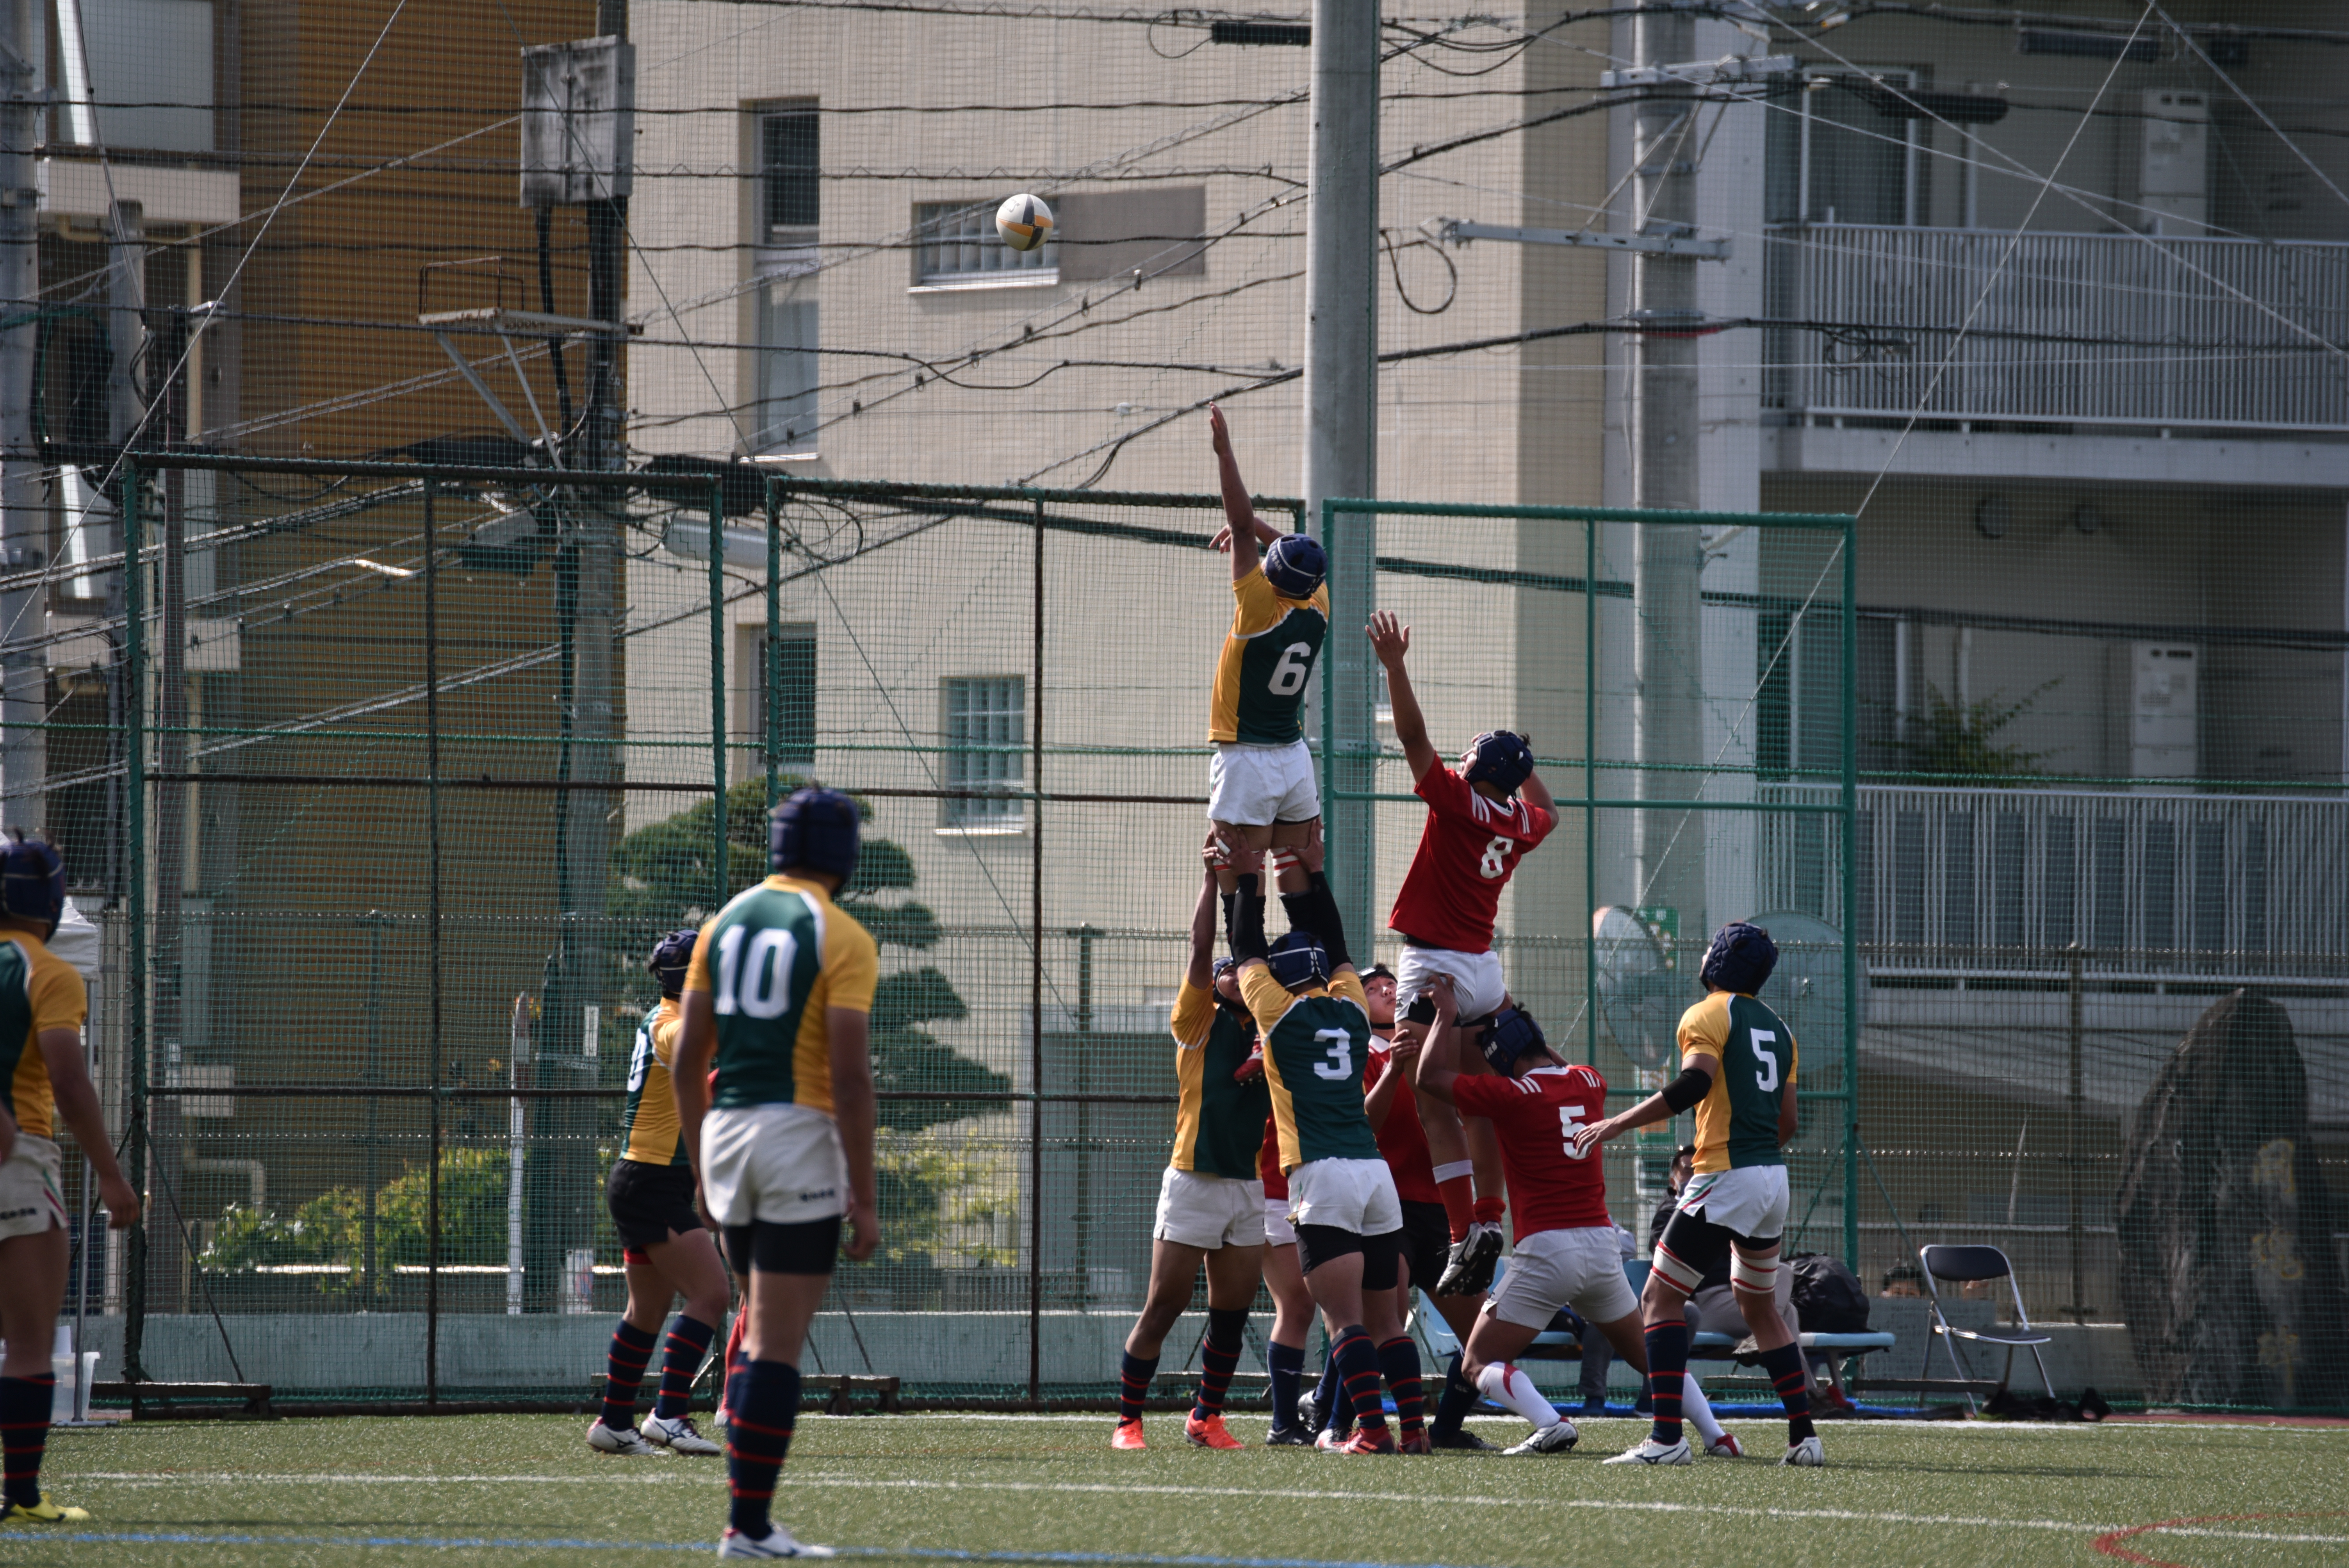 http://kokura-rugby.sakura.ne.jp/DSC_9710%20%281%29_original.JPG